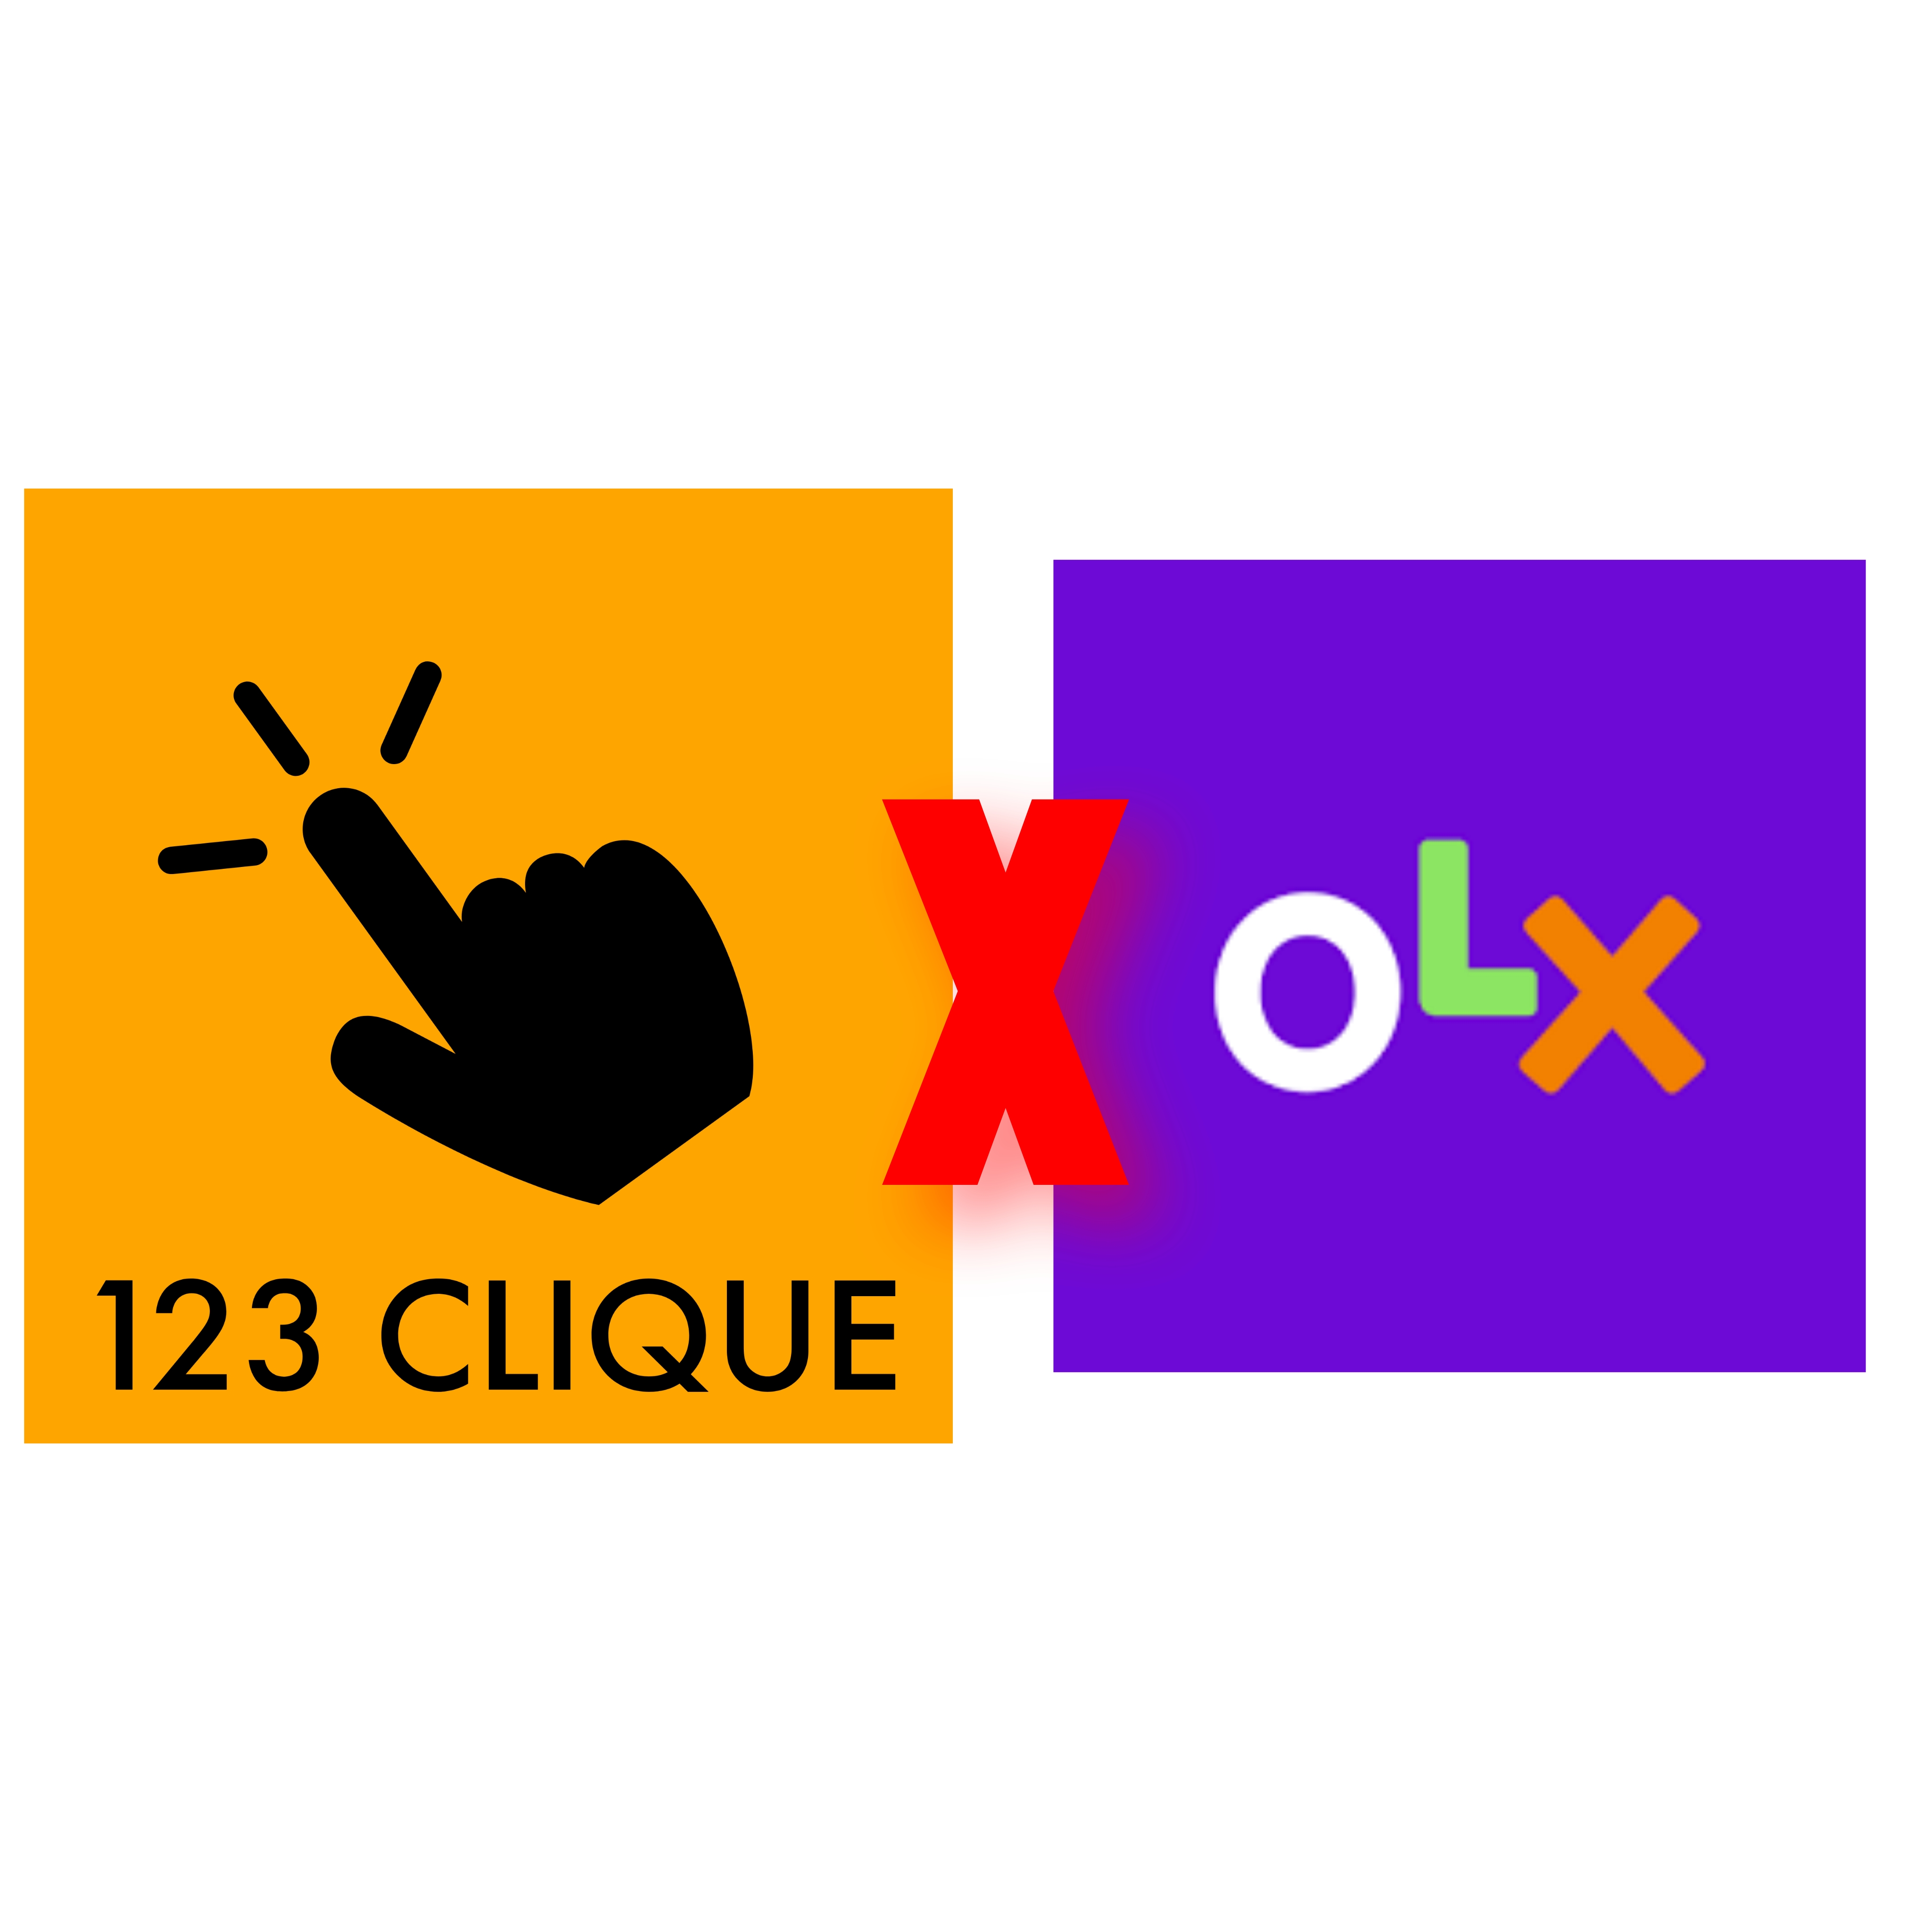 Bloqueio de contas na Olx abre espaço para concorrente e 123 Clique ganha terreno